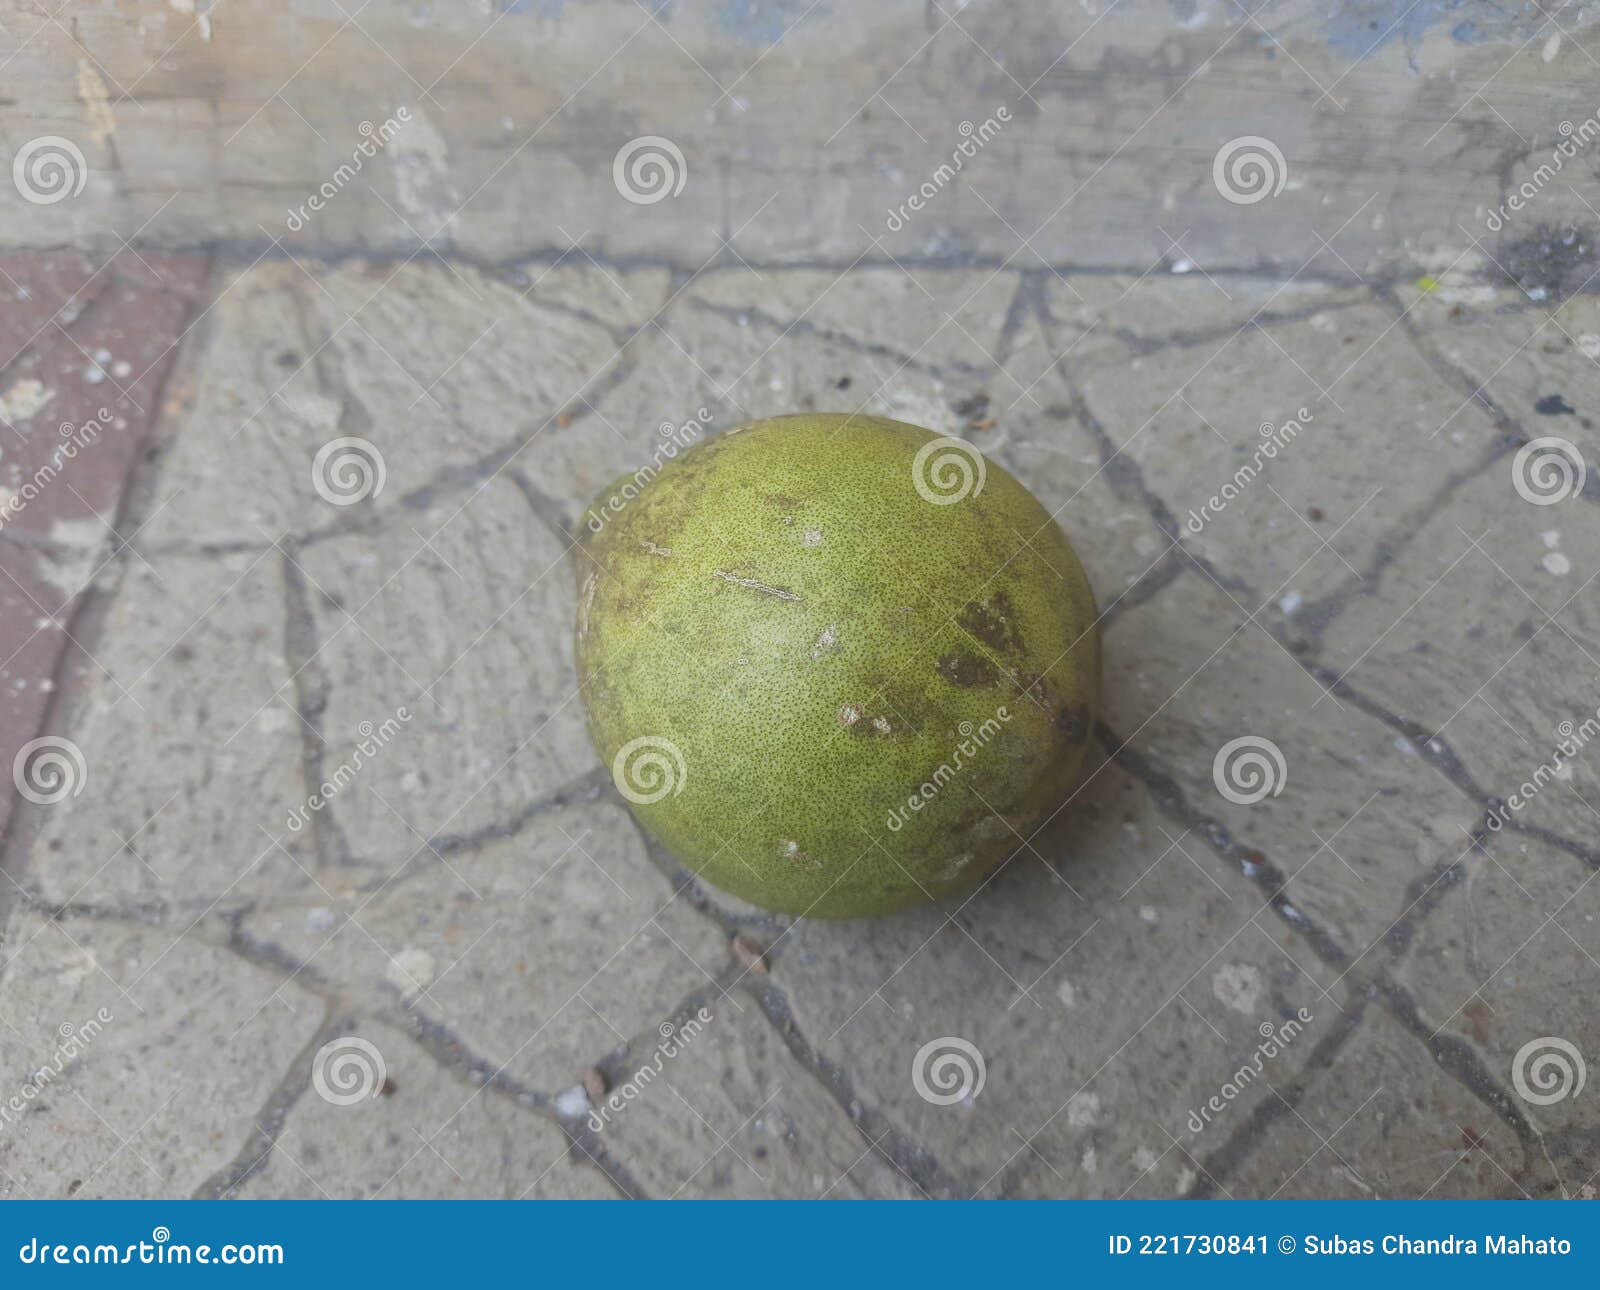 Ripe bael fruit. stock image. Image of nature, elephant - 221730841